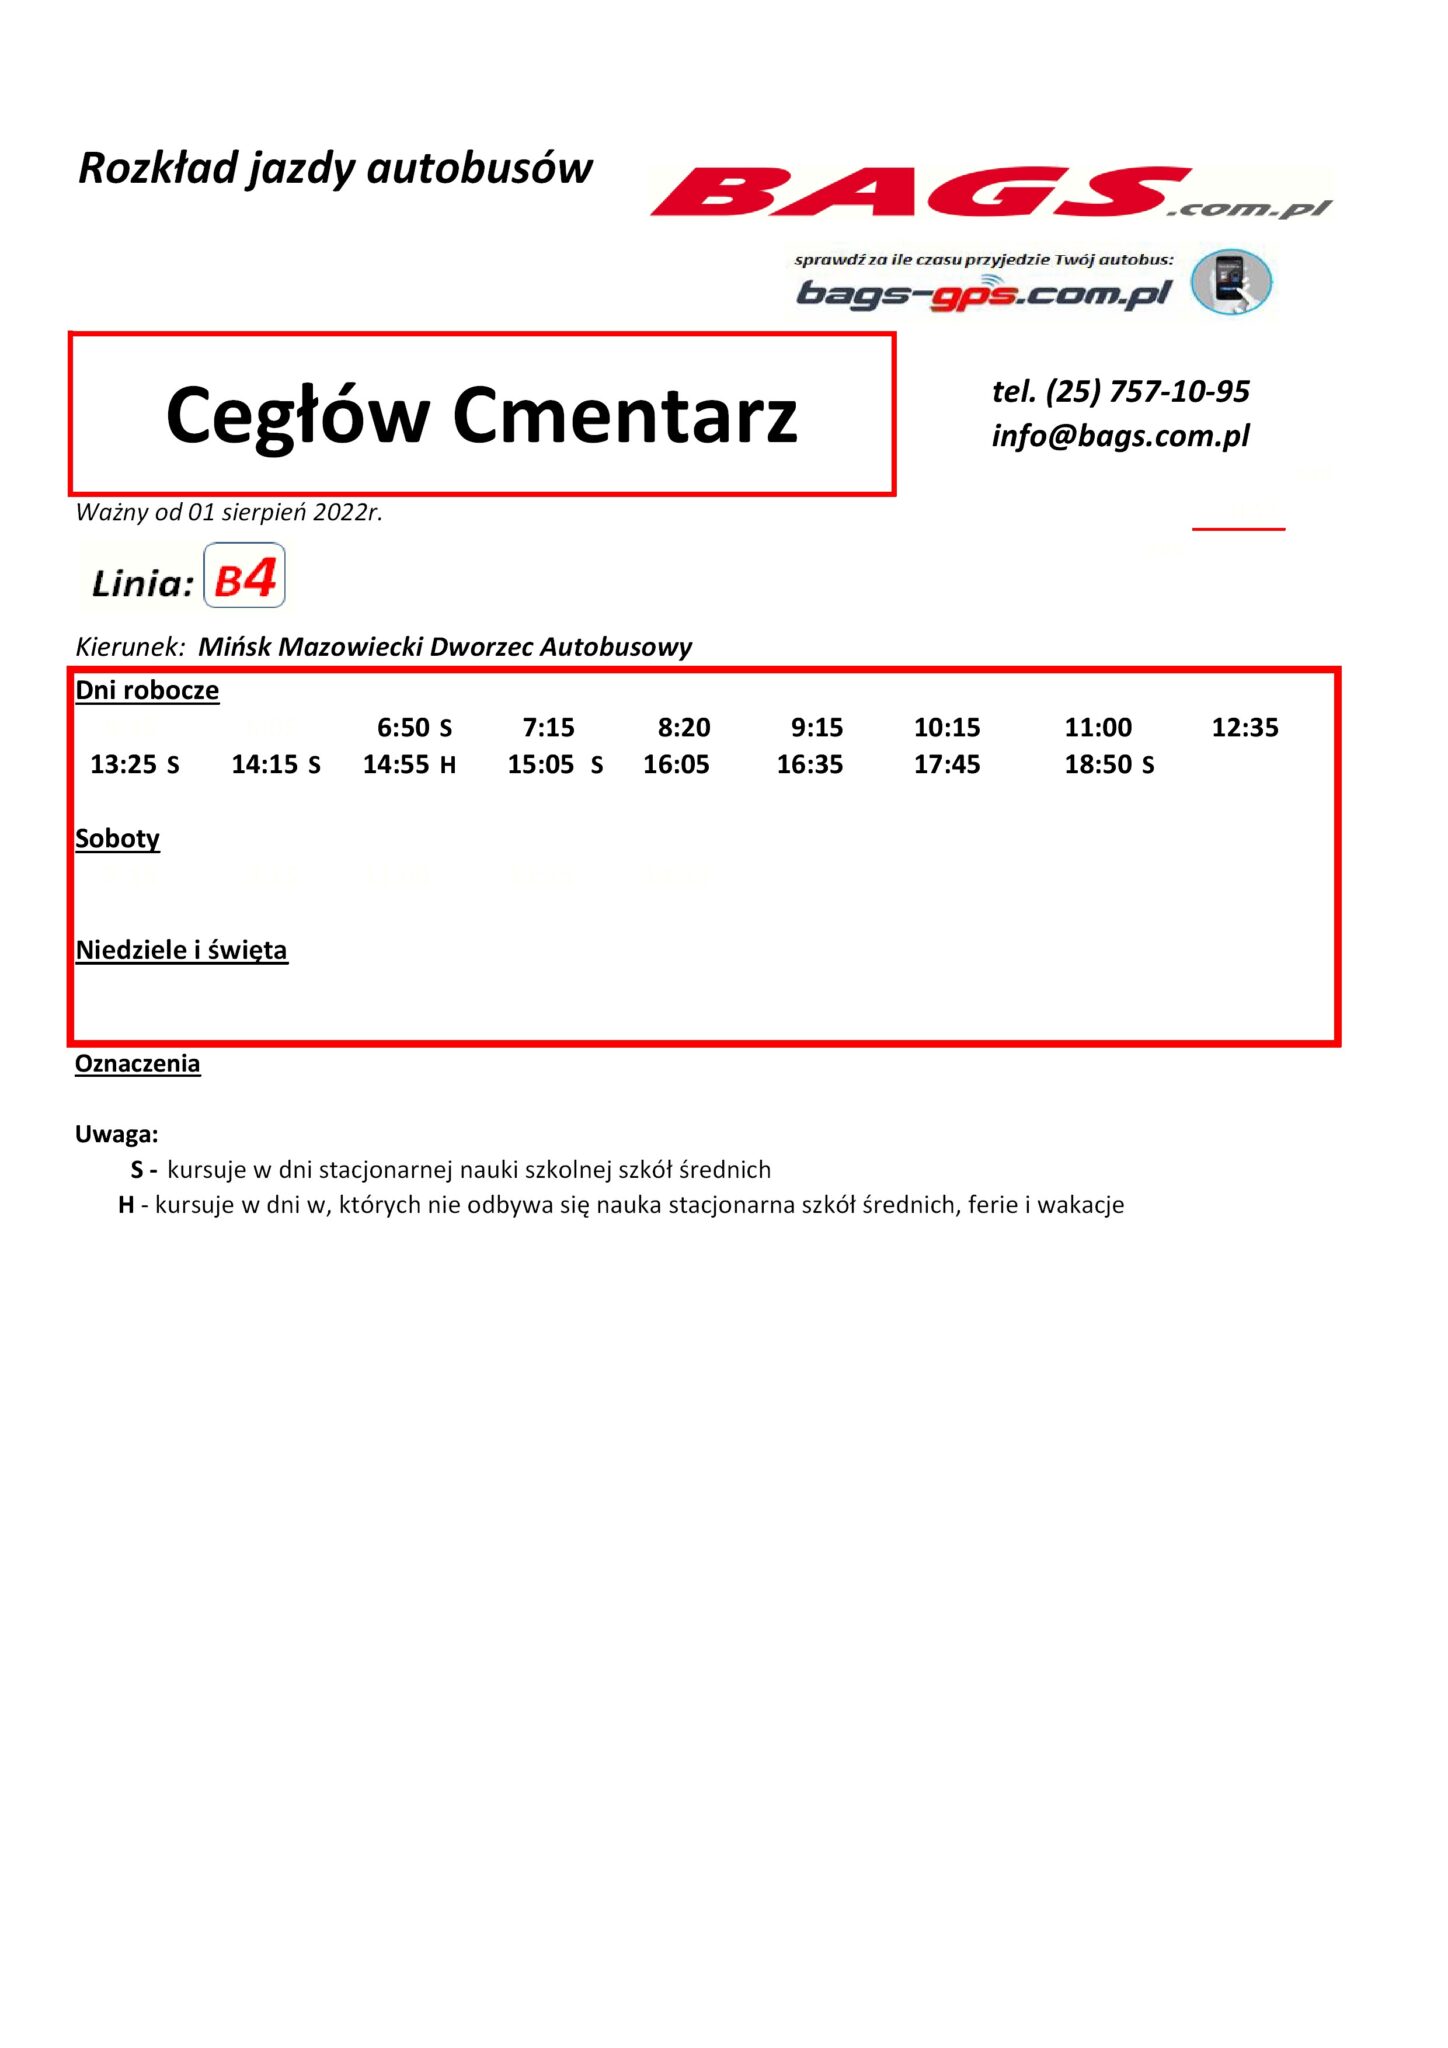 Ceglow-Cmentarz--1448x2048